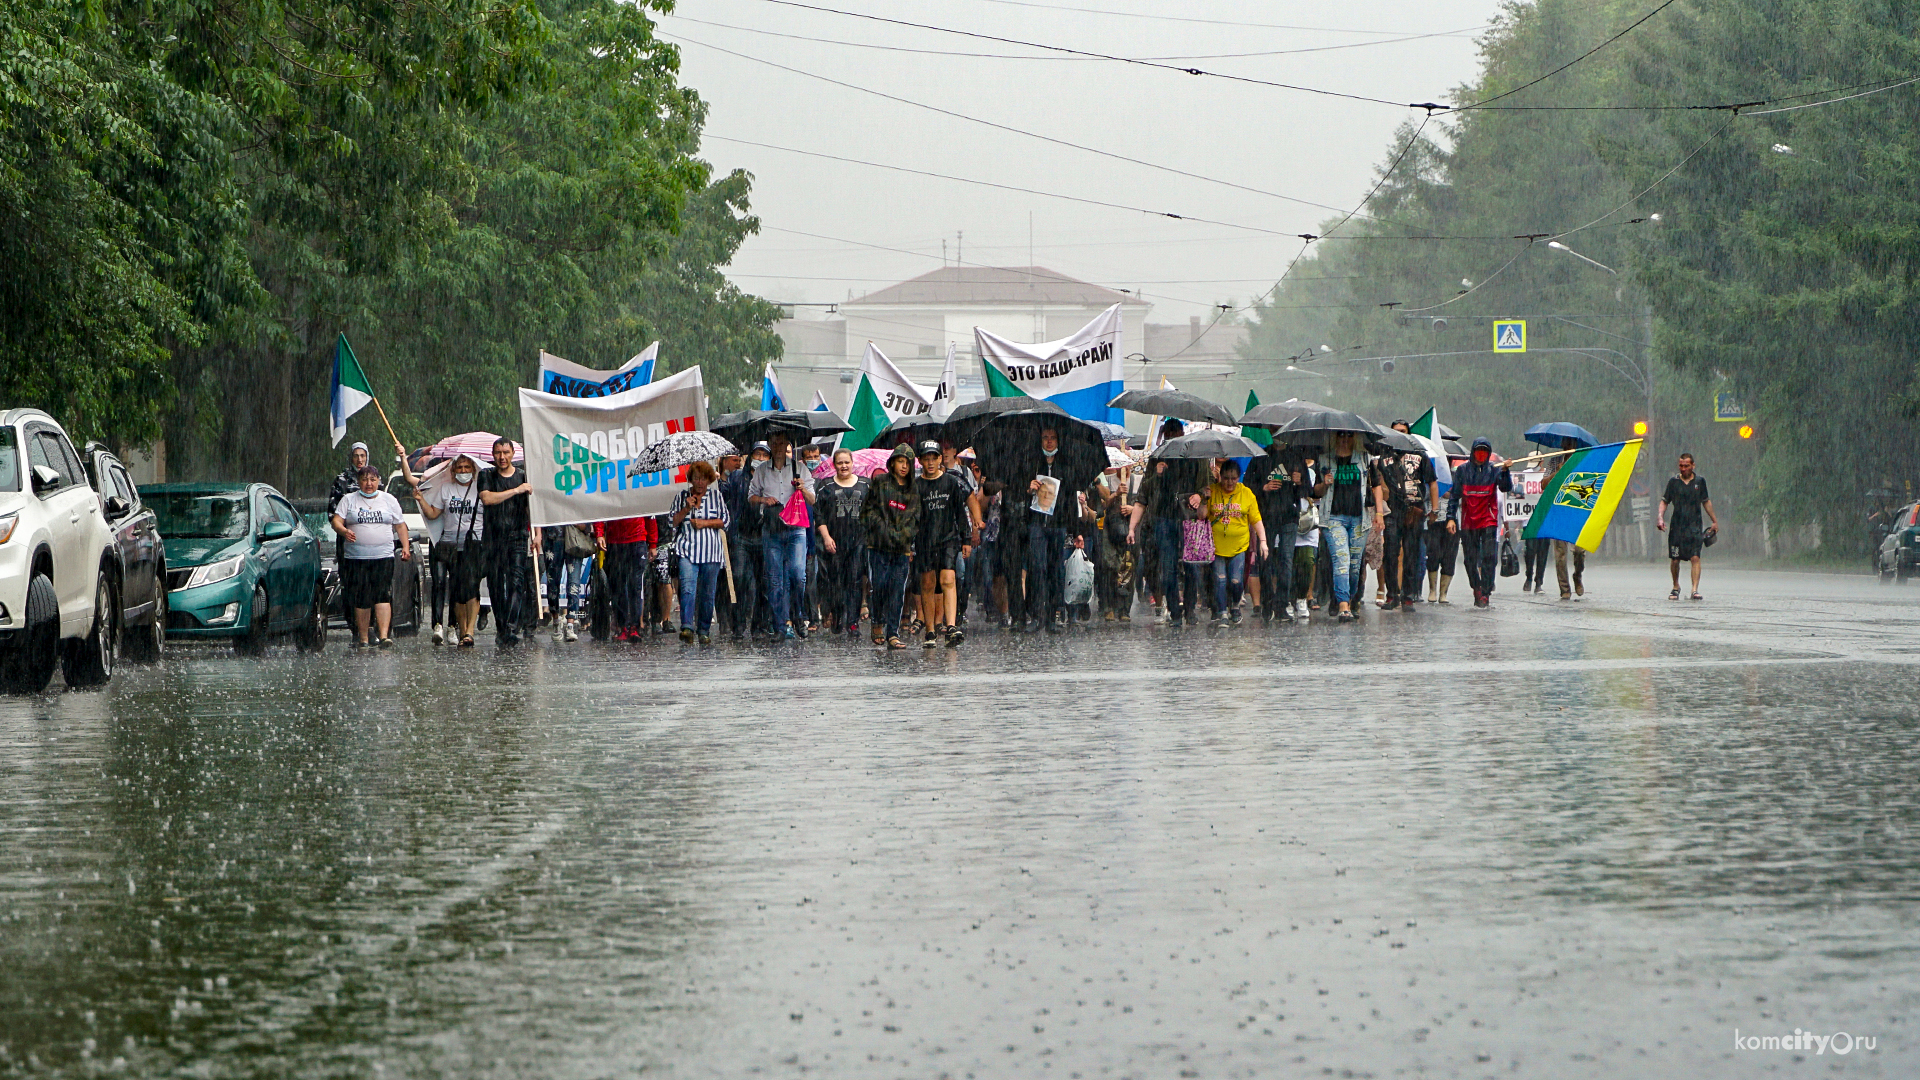 И в дождь, и в зной: Протесты за Фургала не остановили ни жара, ни ливень